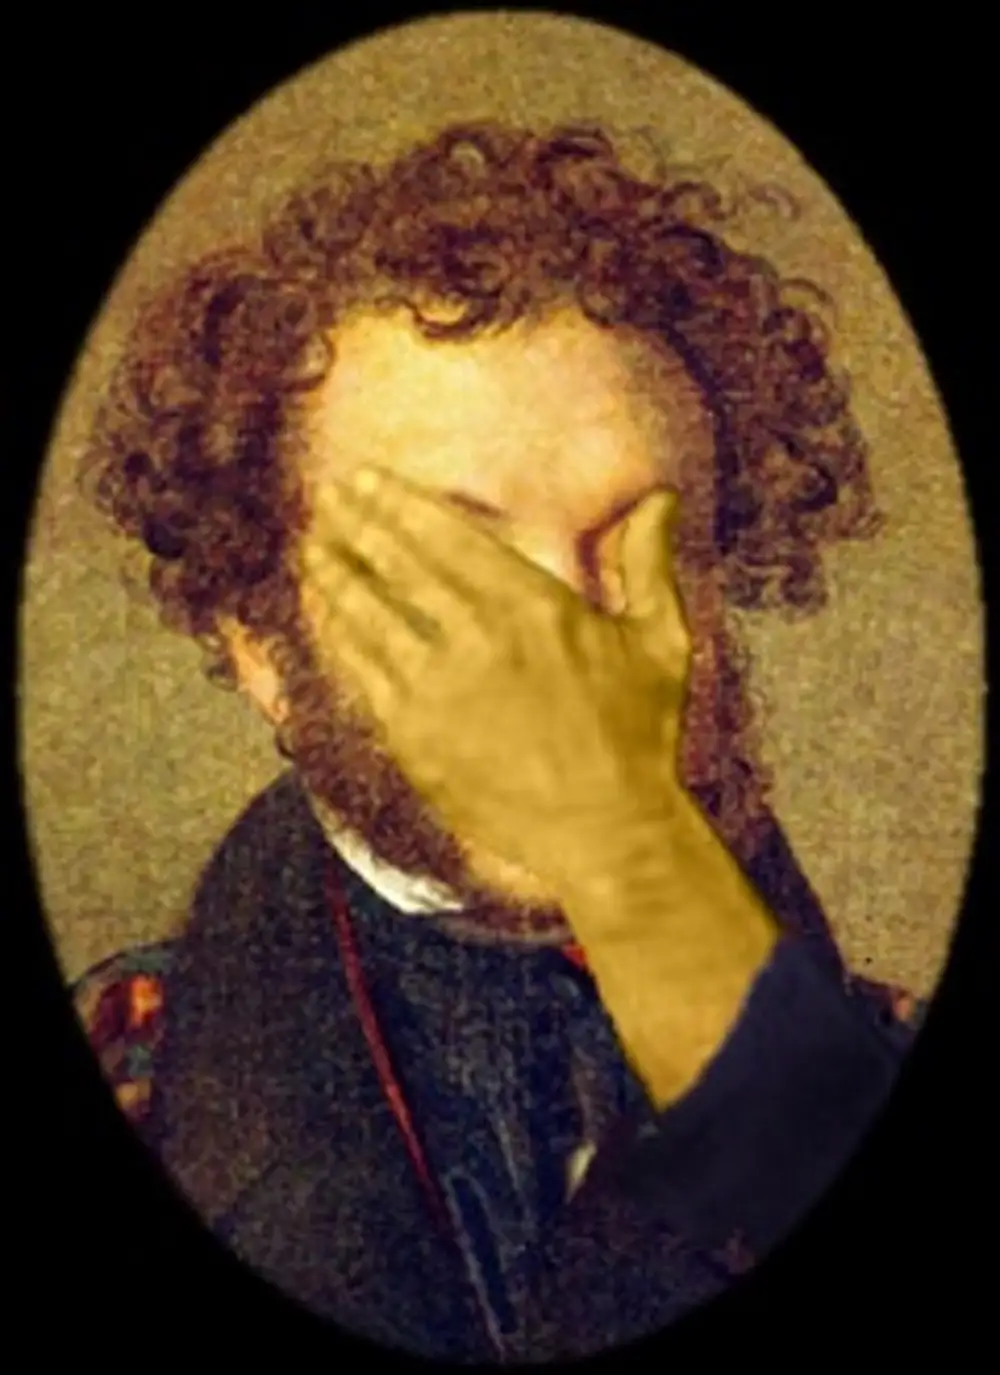 Пушкин закрывает лицо руками